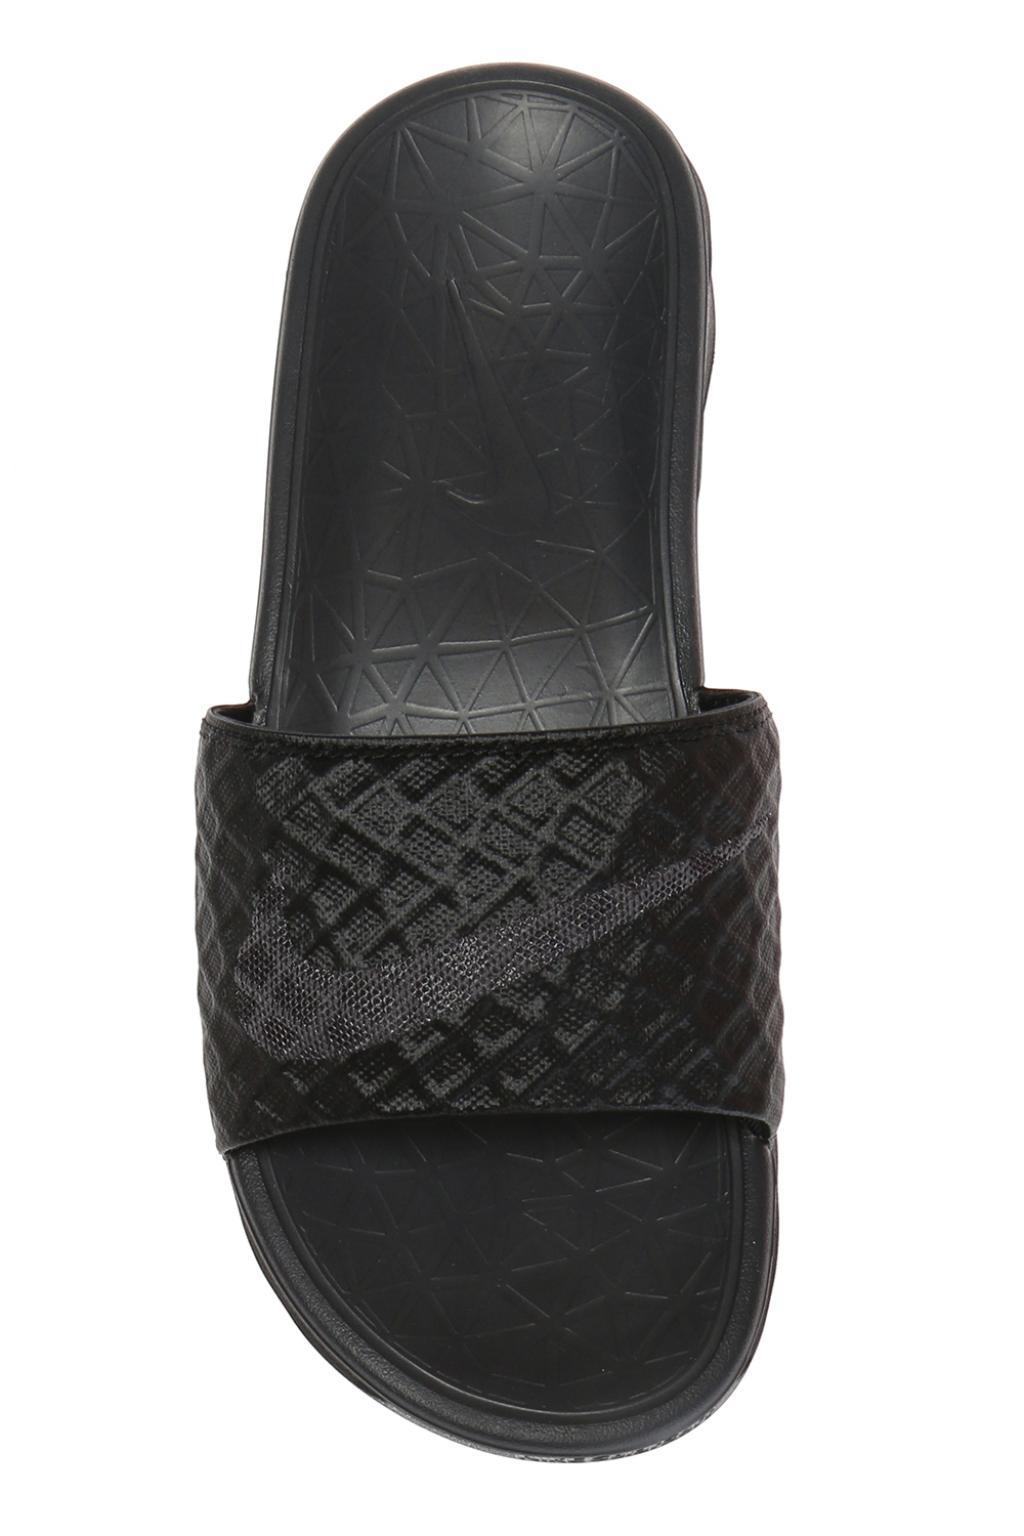 Nike Benassi Solarsoft Slide Athletic Sandal in Black for Men - Lyst